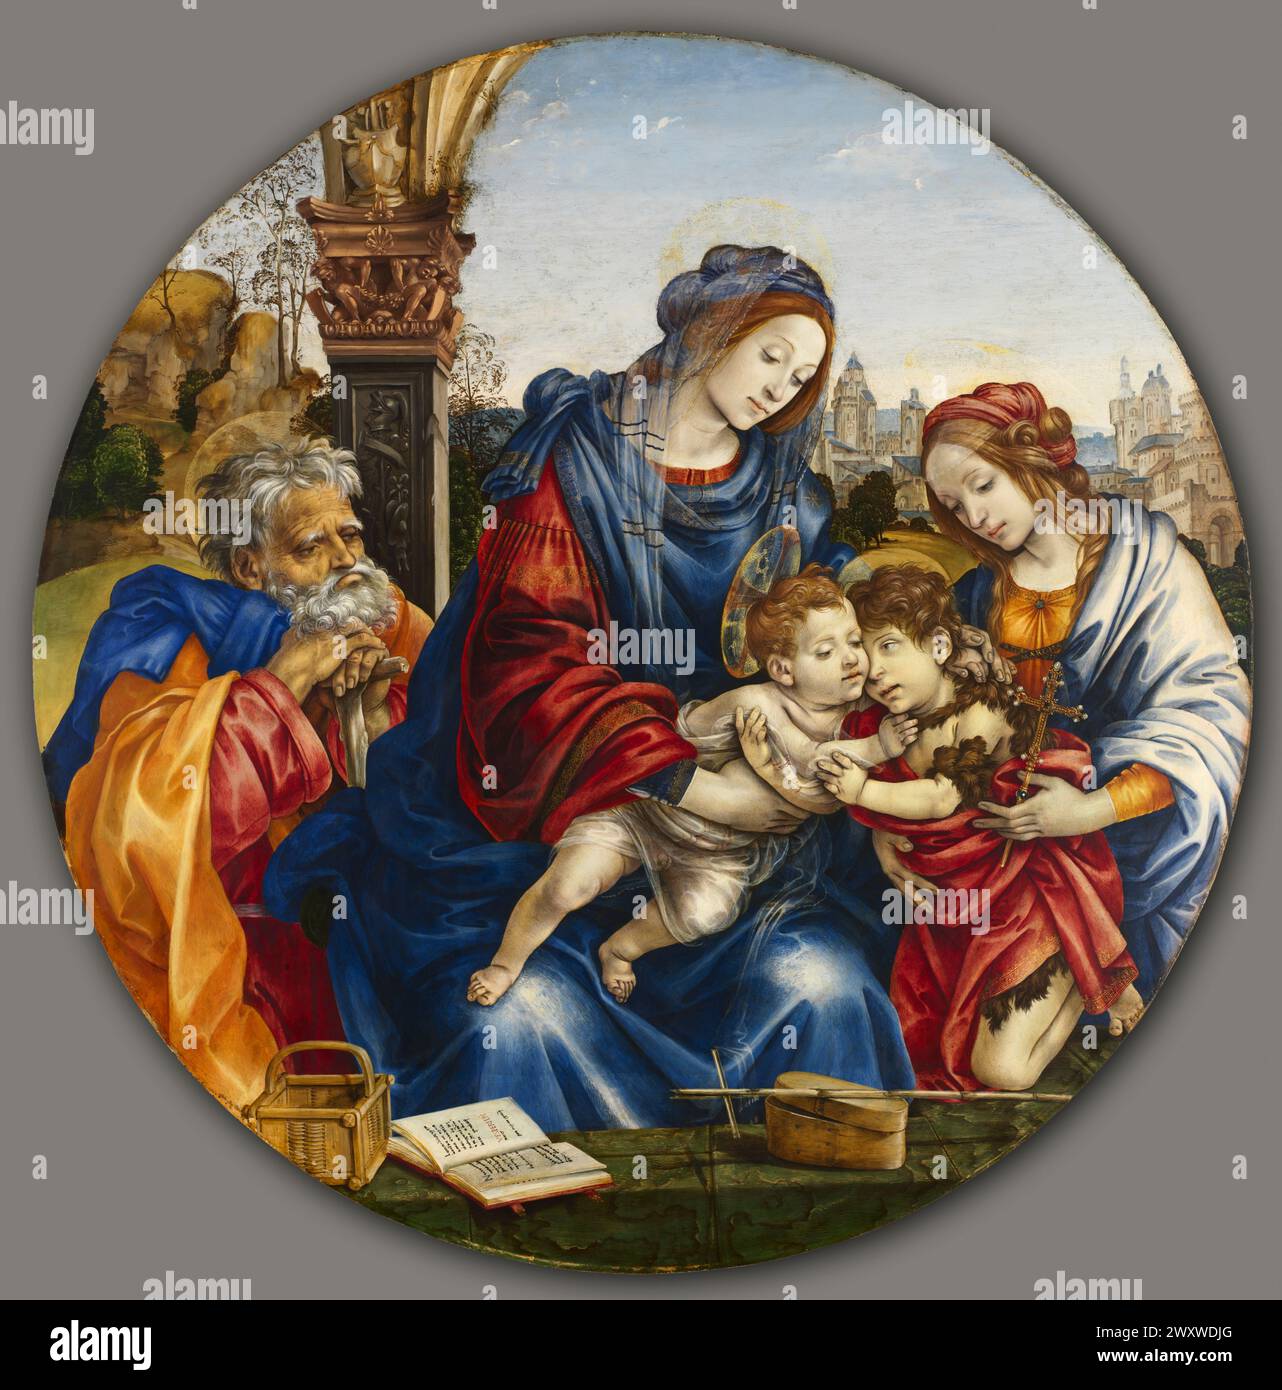 La Sainte famille avec Saint Jean Baptiste et Sainte Marguerite. Filippino Lippi. c. 1495. Banque D'Images